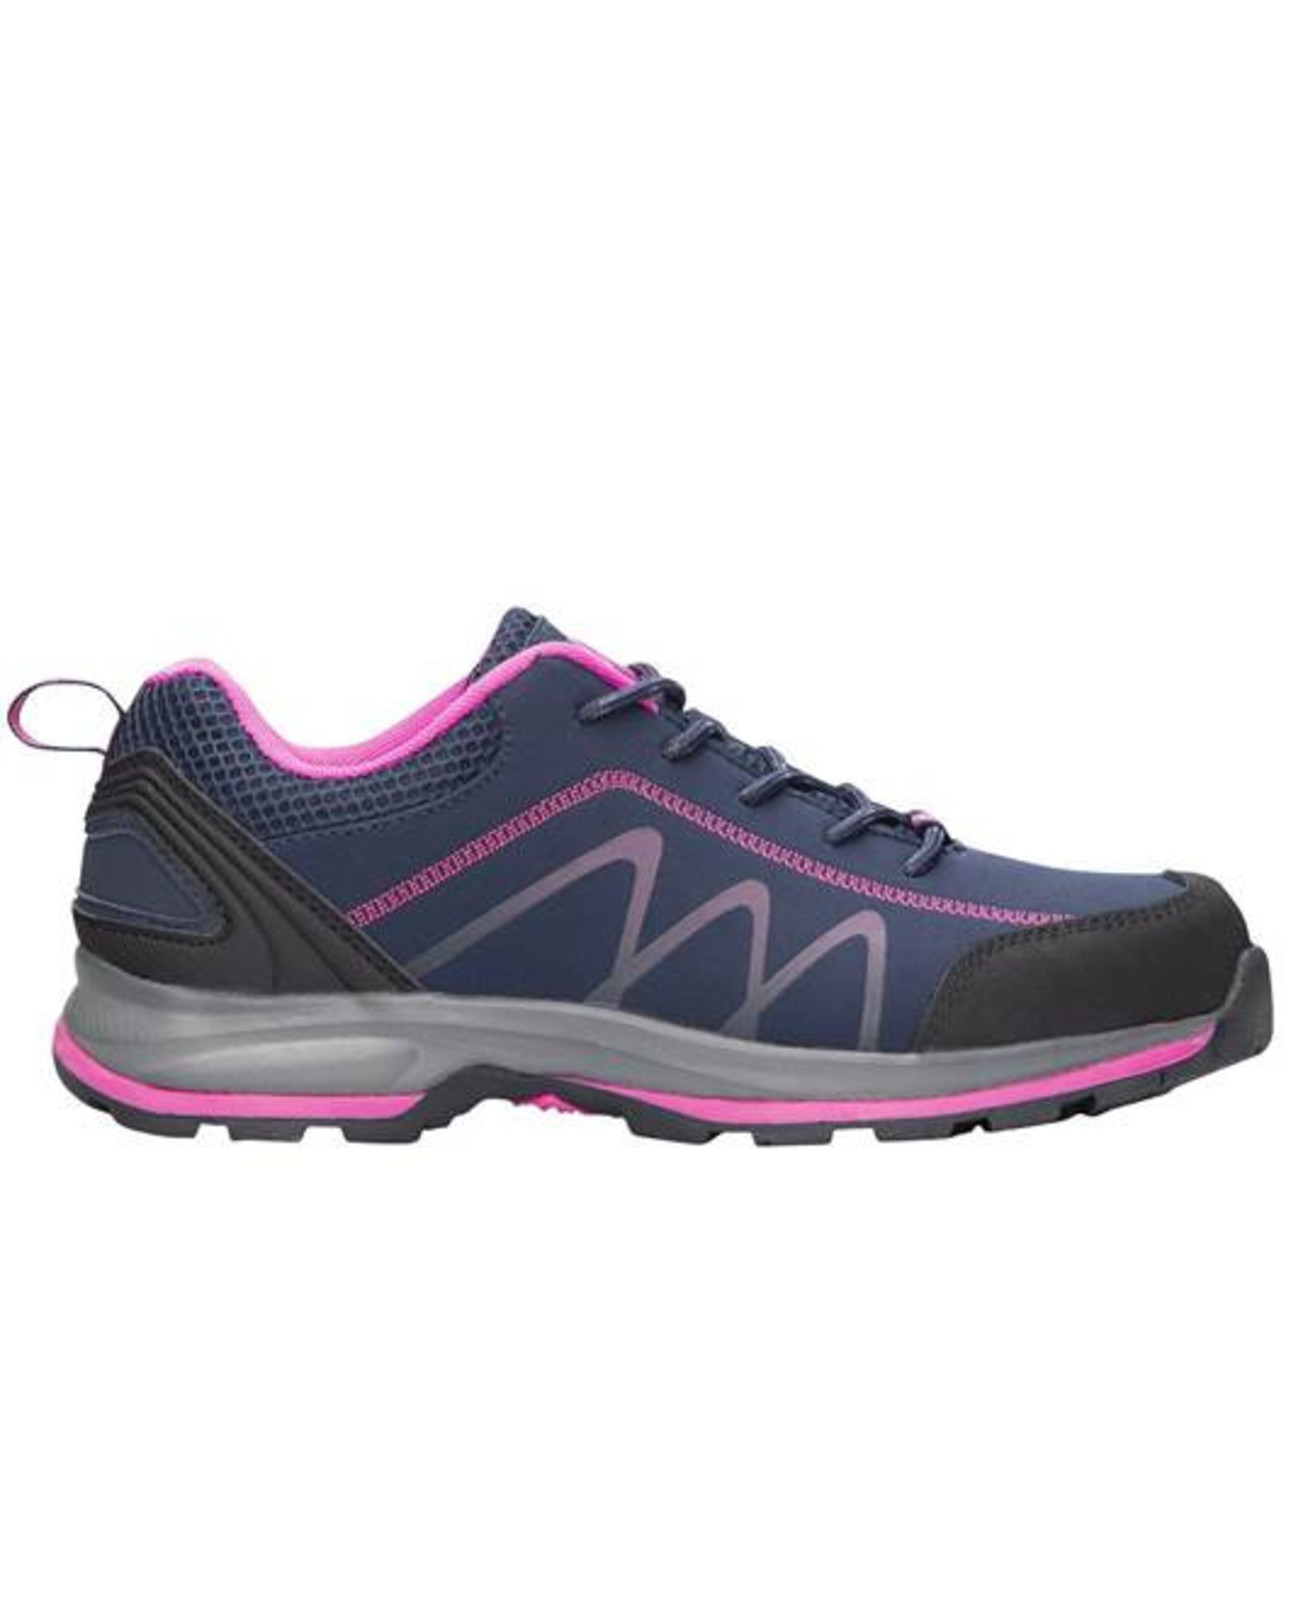 Dámska outdoor softshellová obuv Ardon Bloom - veľkosť: 39, farba: navy lila